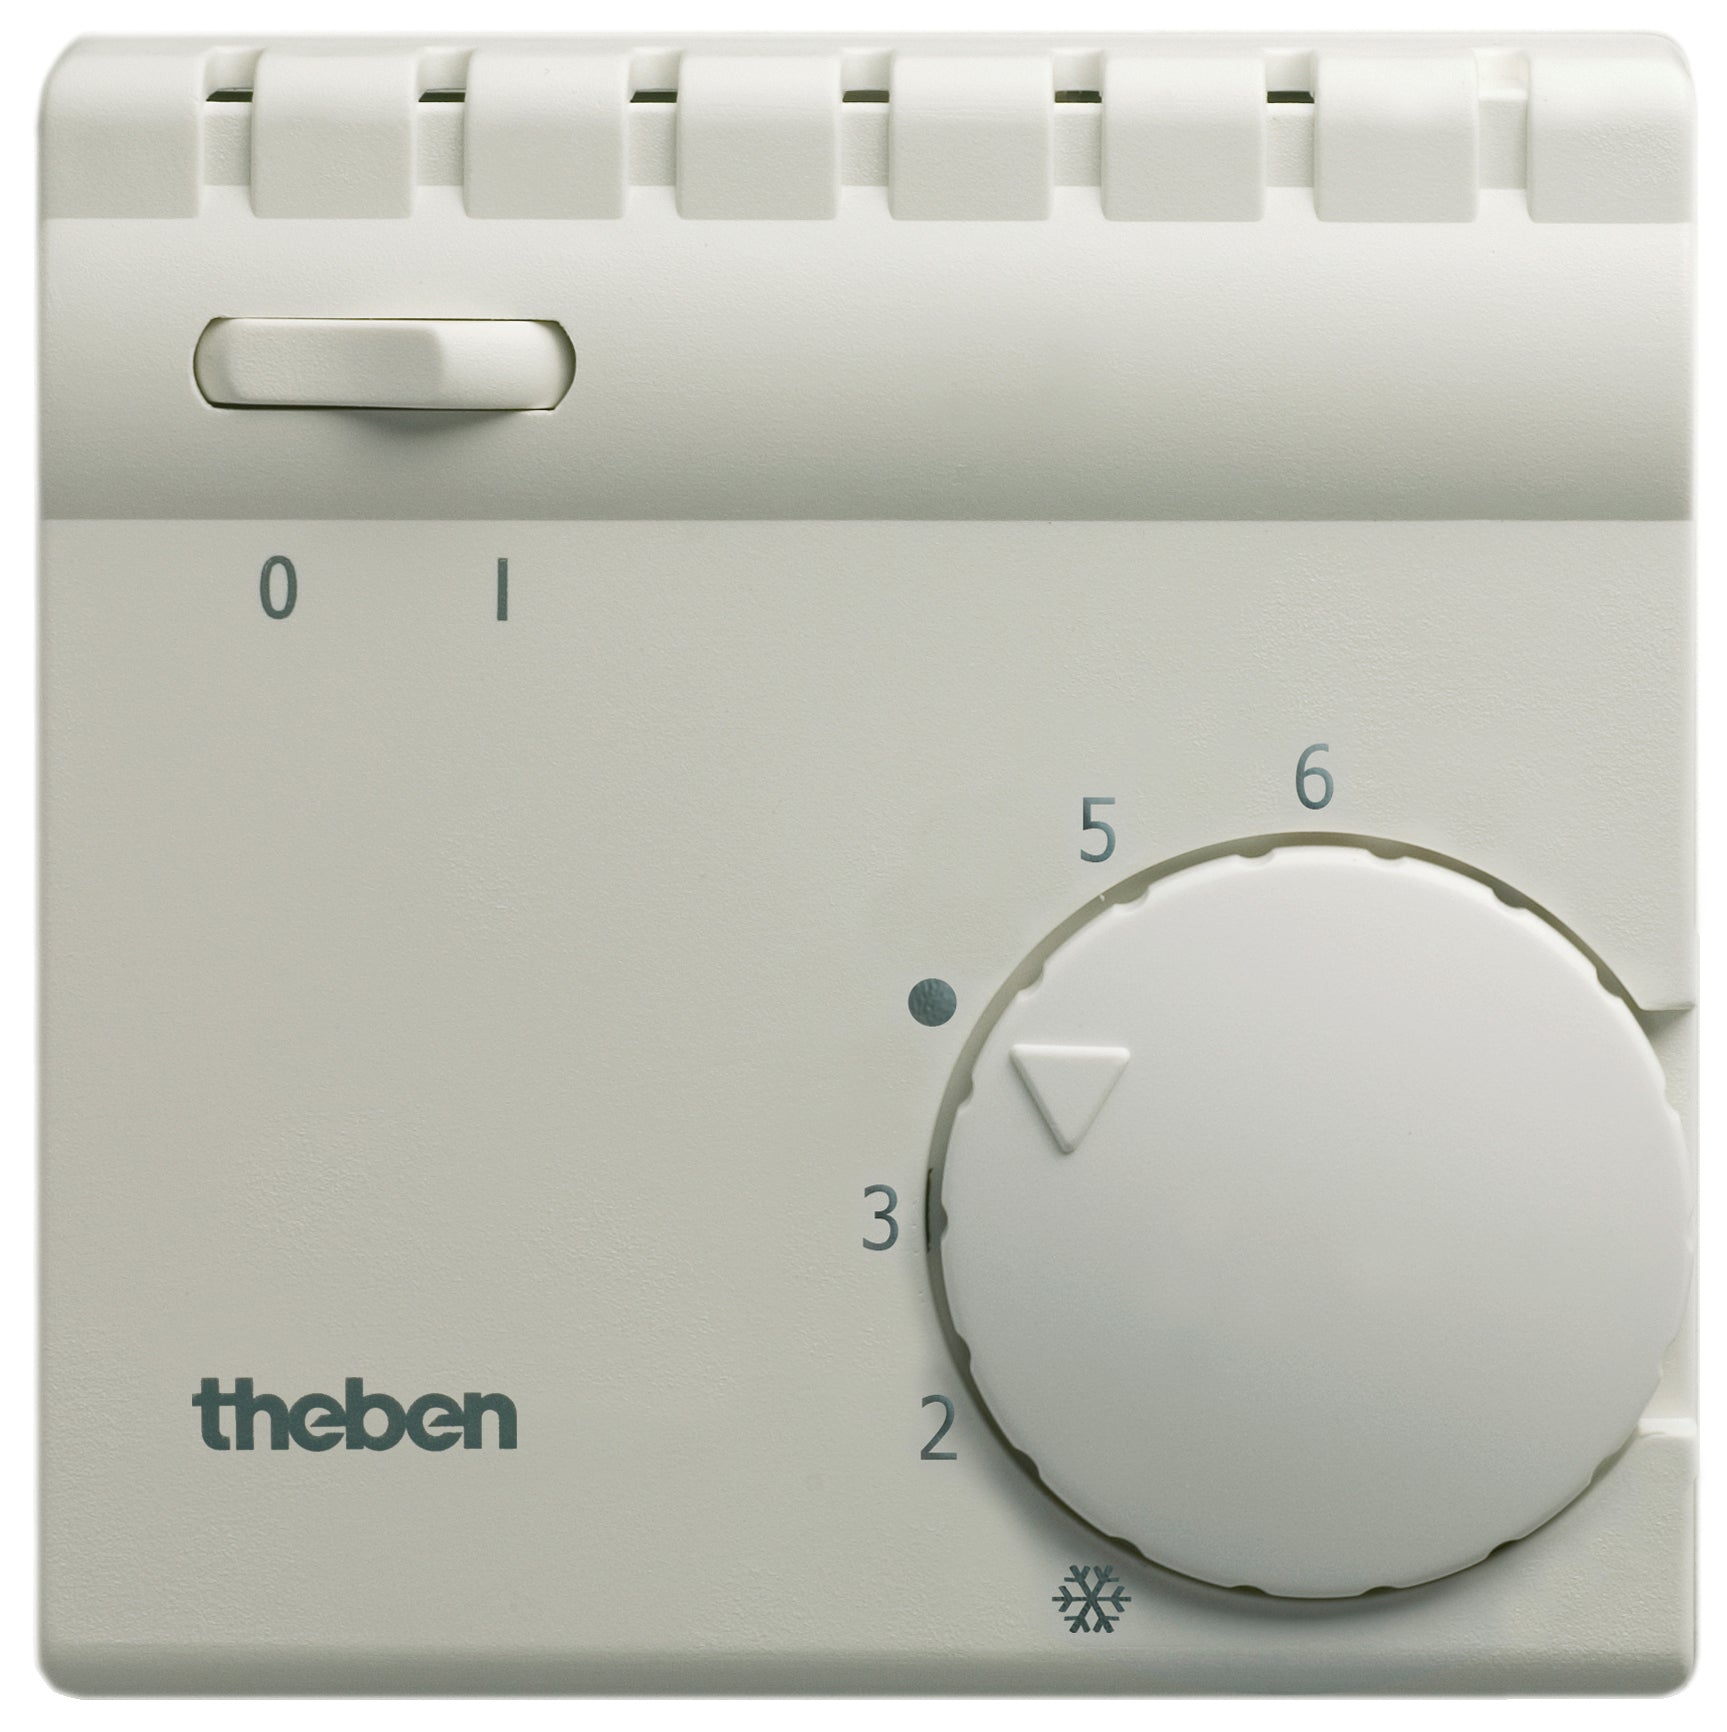 THEBEN Raum-Thermostate mit Schalter für Heizung Ein/Aus